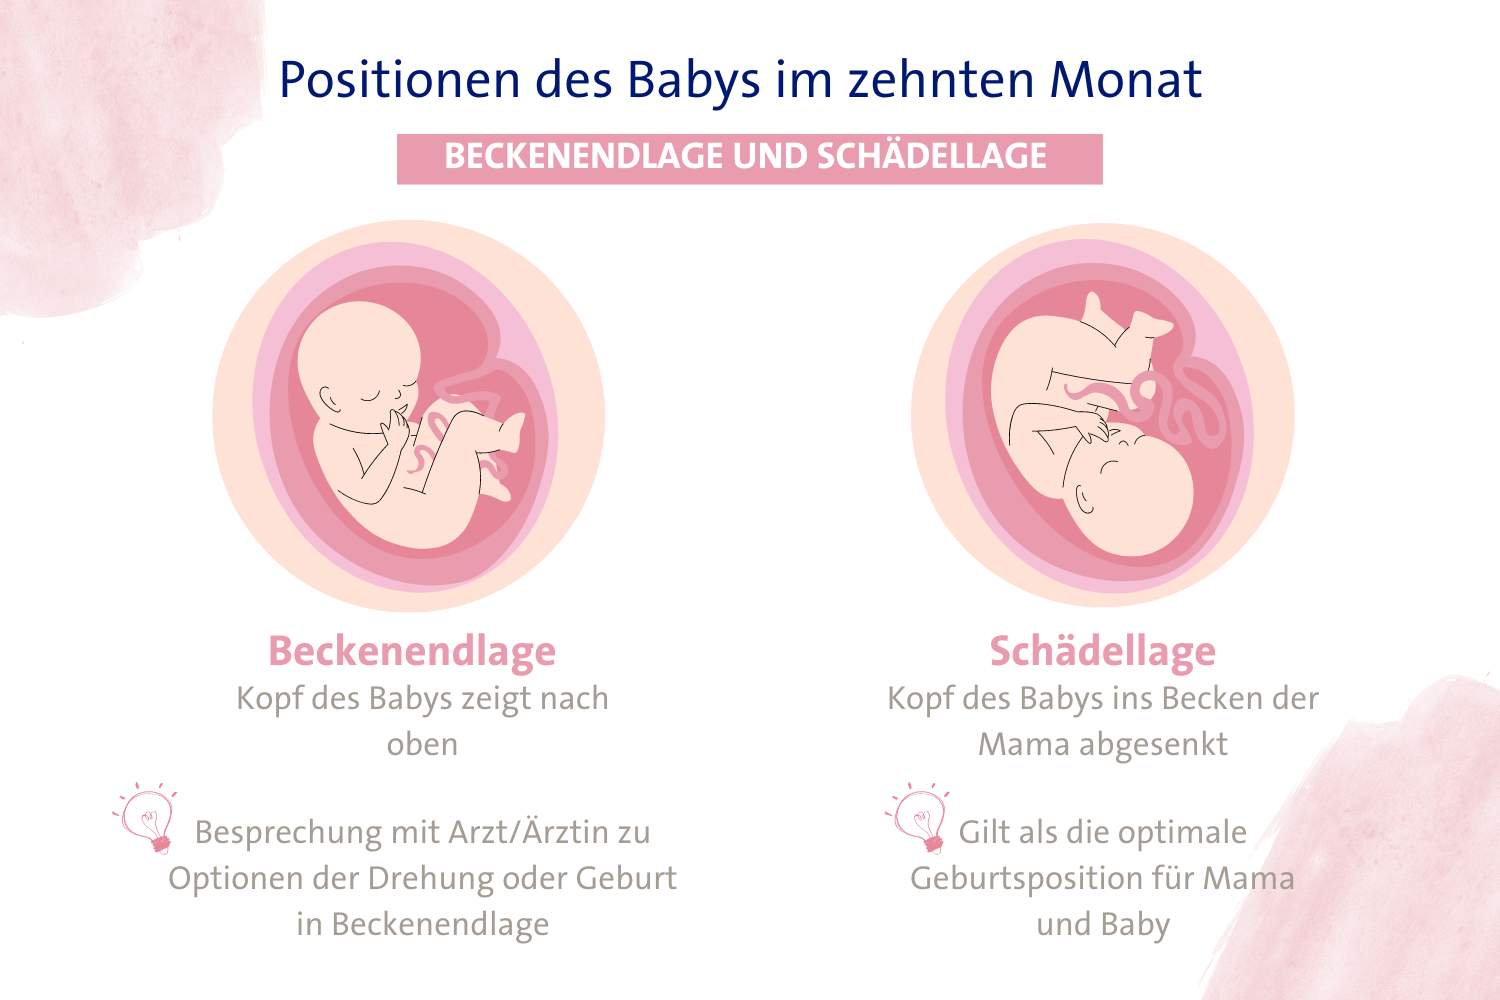 Infografik zu Beckenendlage und Schädellage als Geburtspositionen des Babys